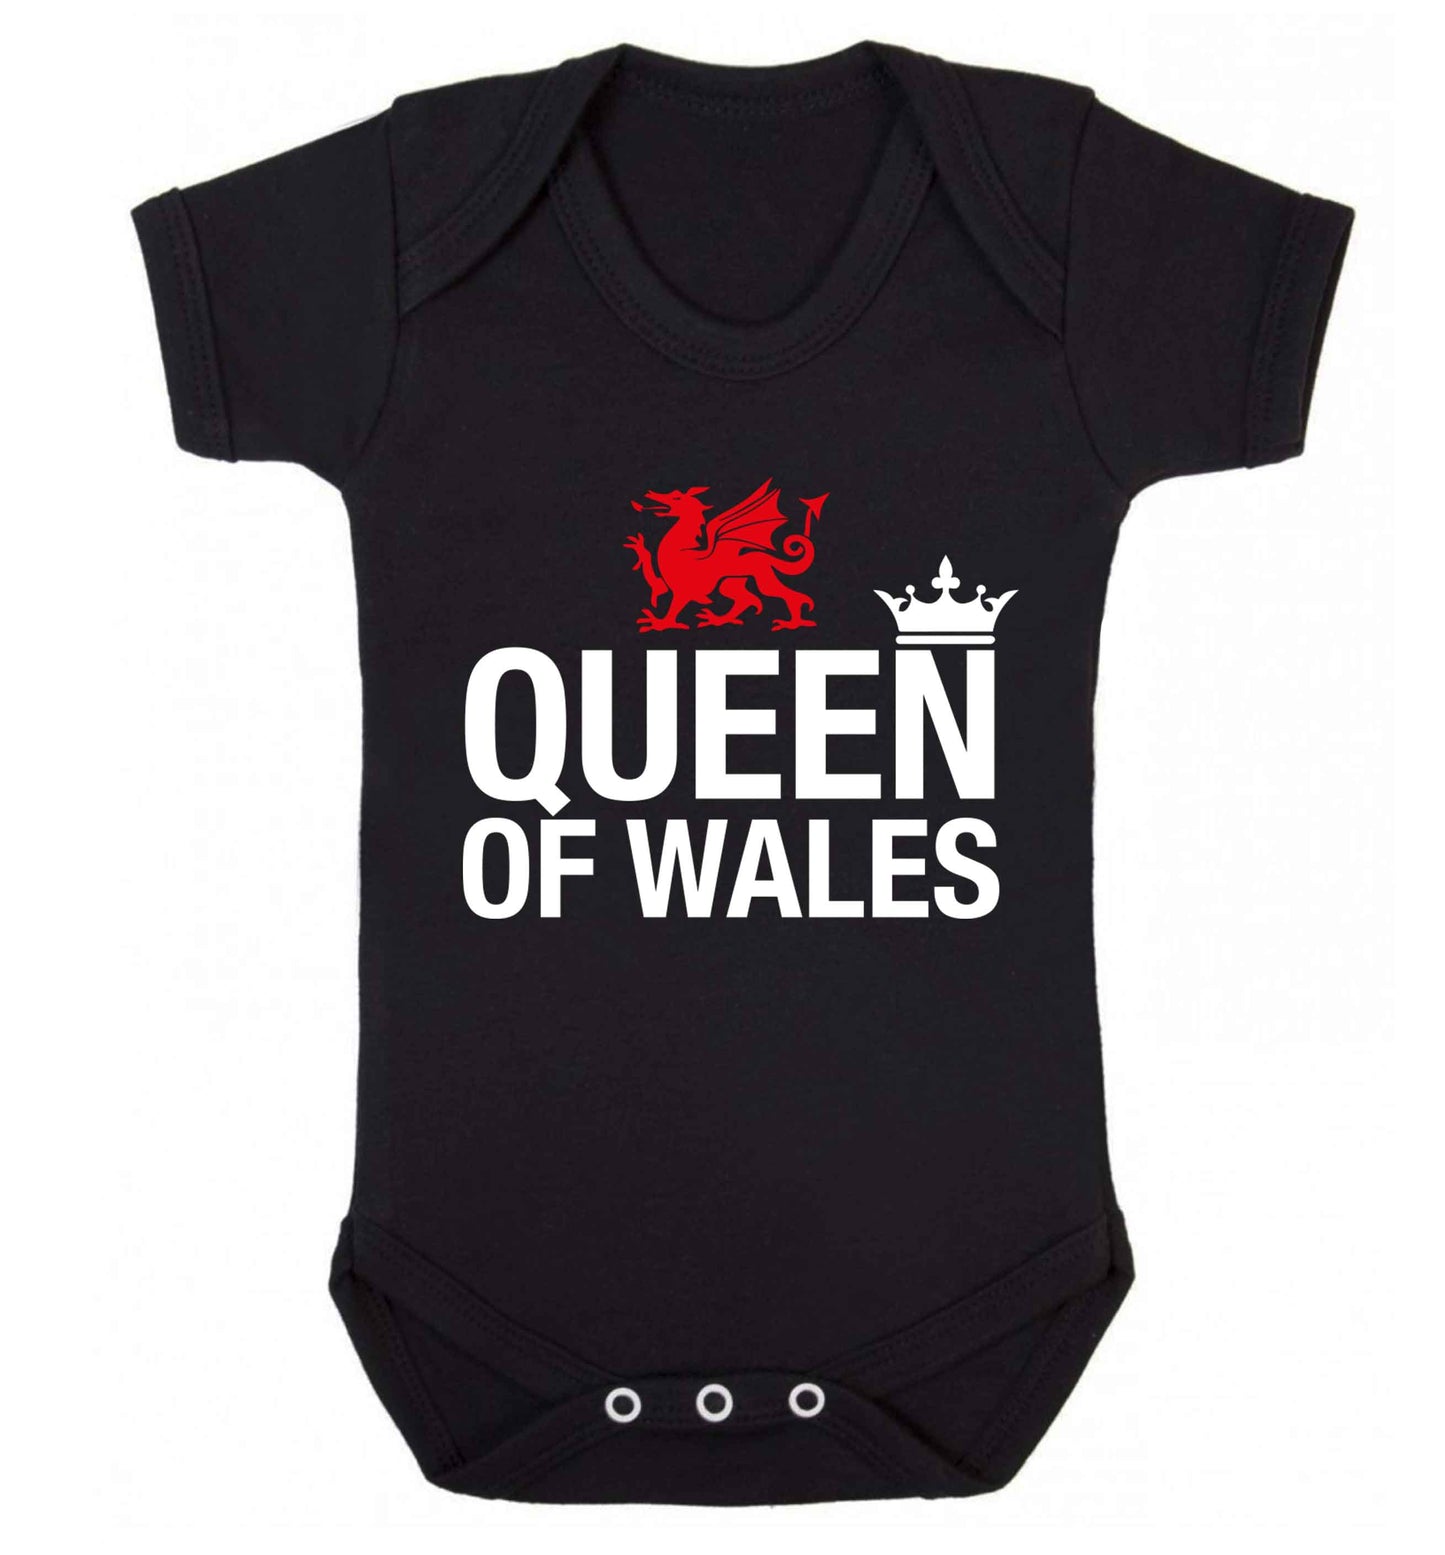 Queen of Wales Baby Vest black 18-24 months